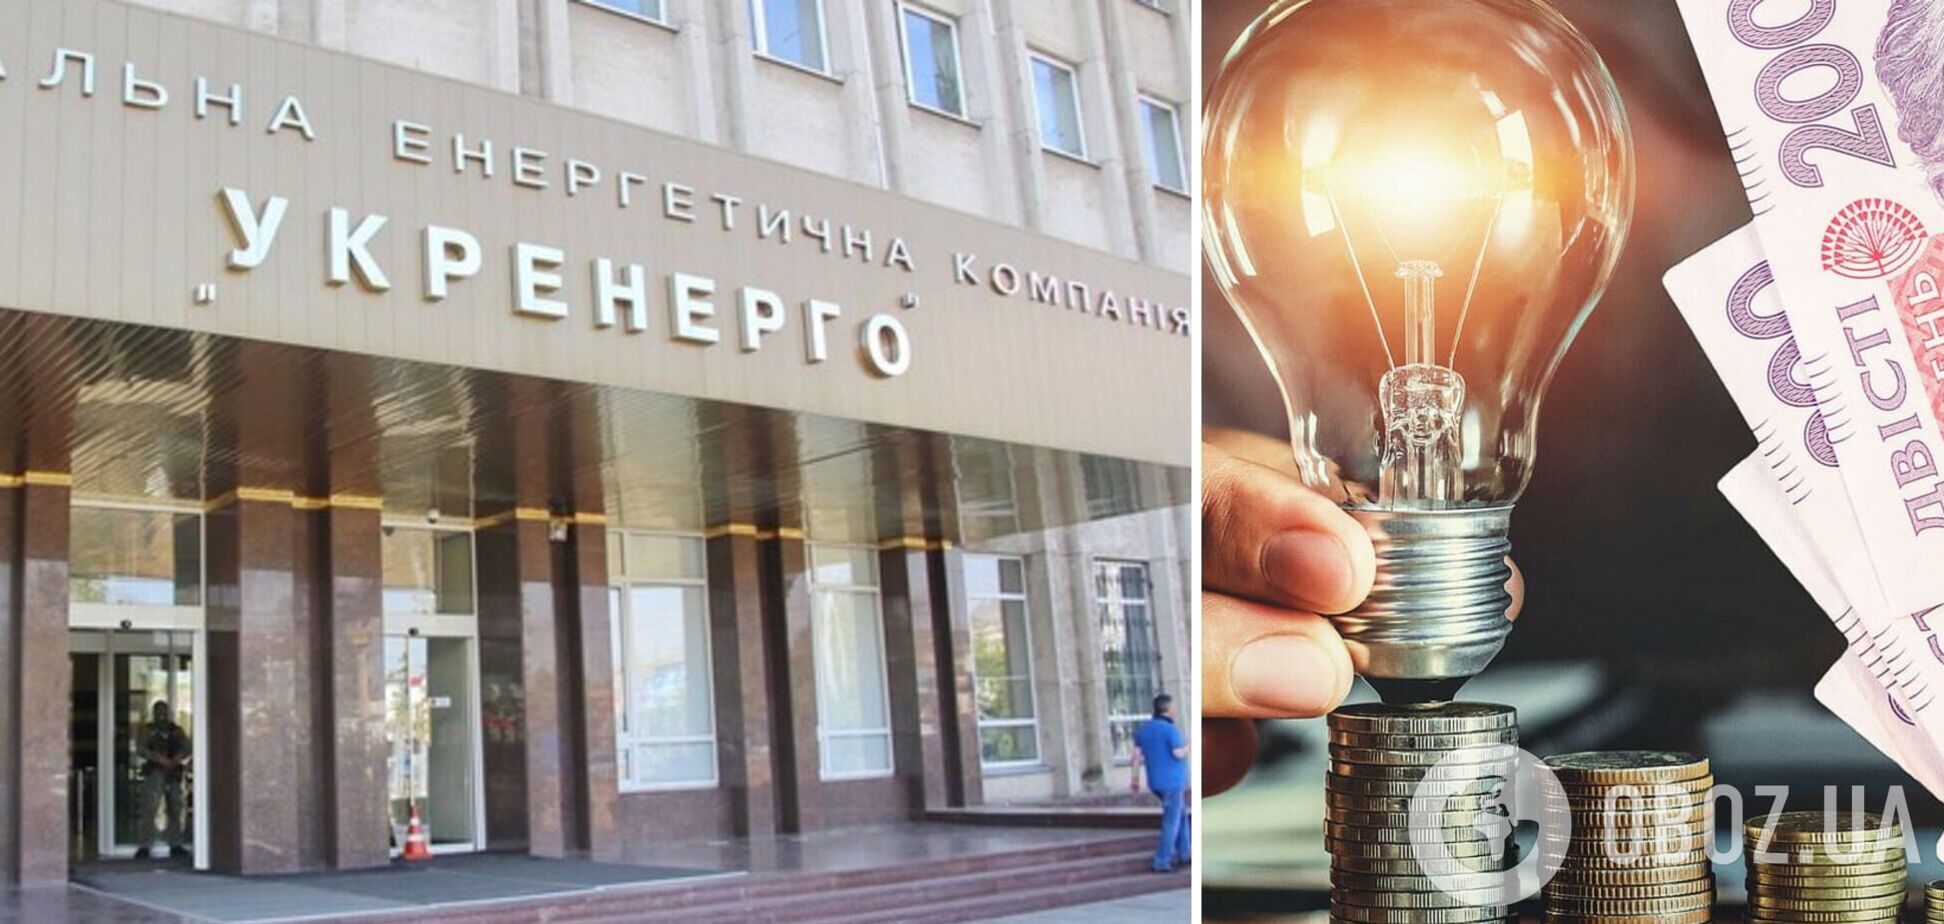 Повышение тарифа на передачу электроэнергии вызывает много вопросов к менеджменту 'Укрэнерго', – Кулик